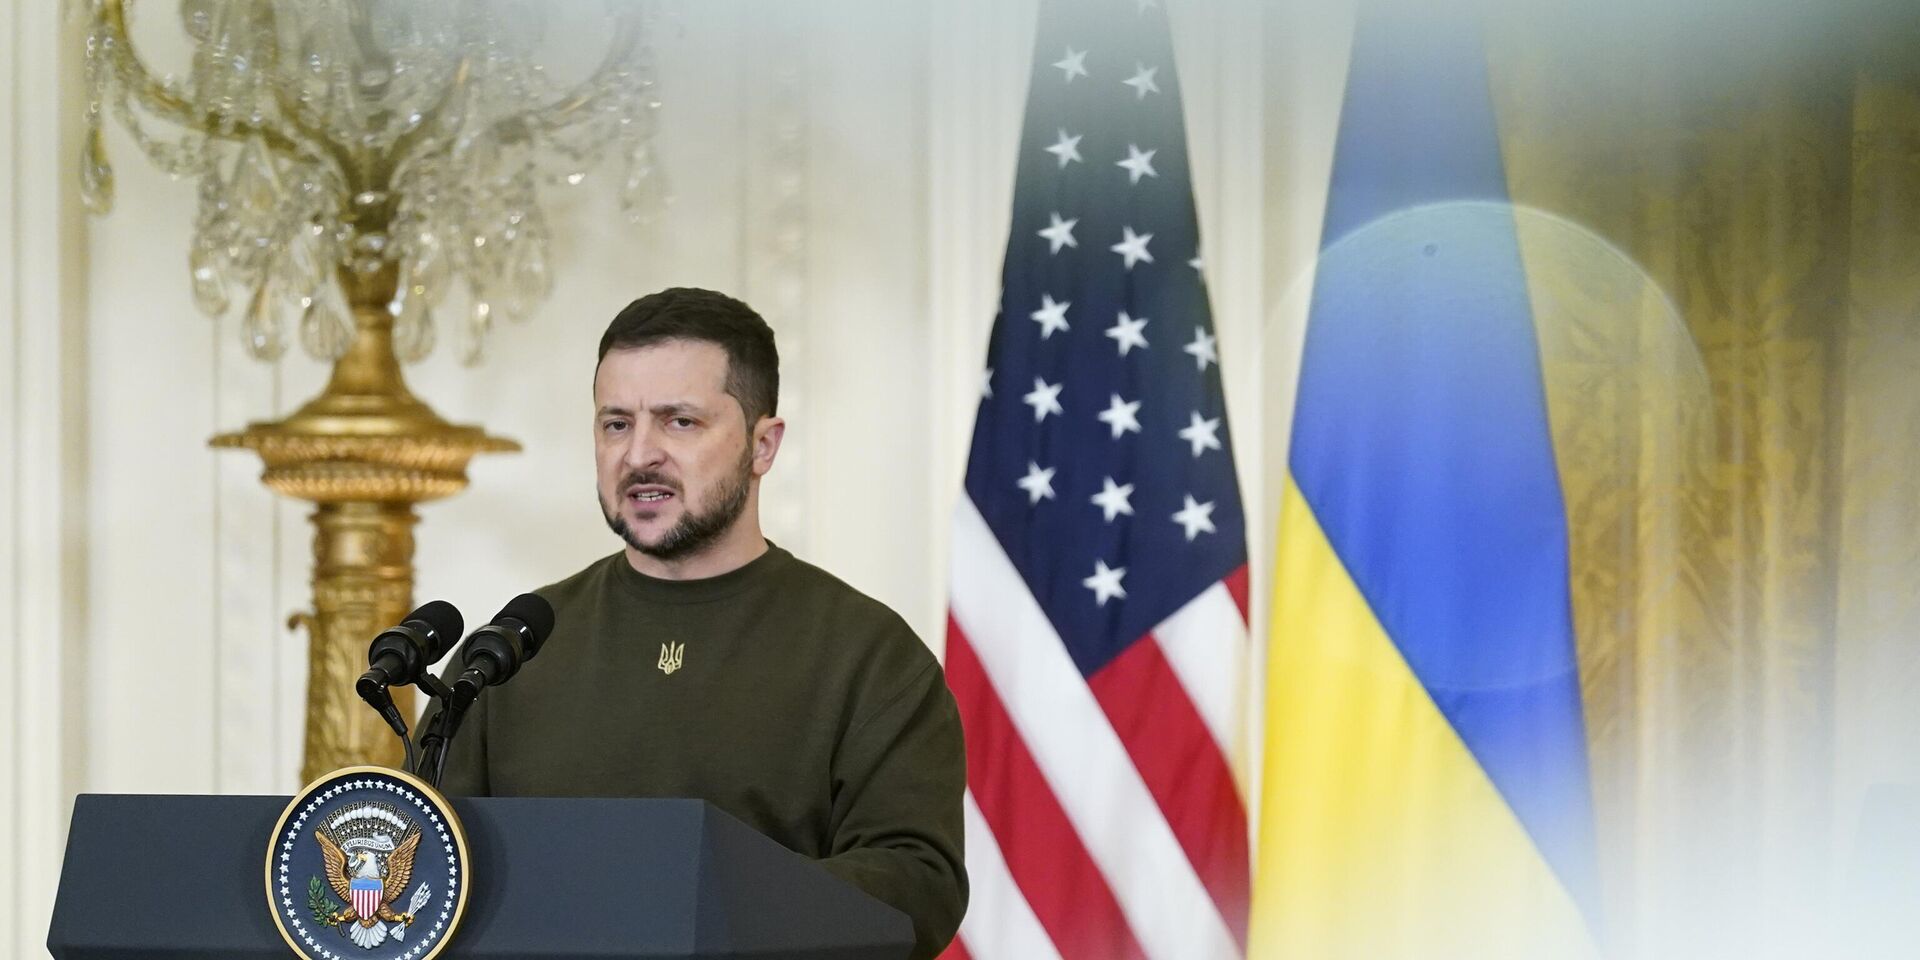 Президент Украины Владимир Зеленский выступает в Белом доме в Вашингтоне. 21 декабря 2022 года - ИноСМИ, 1920, 23.12.2022